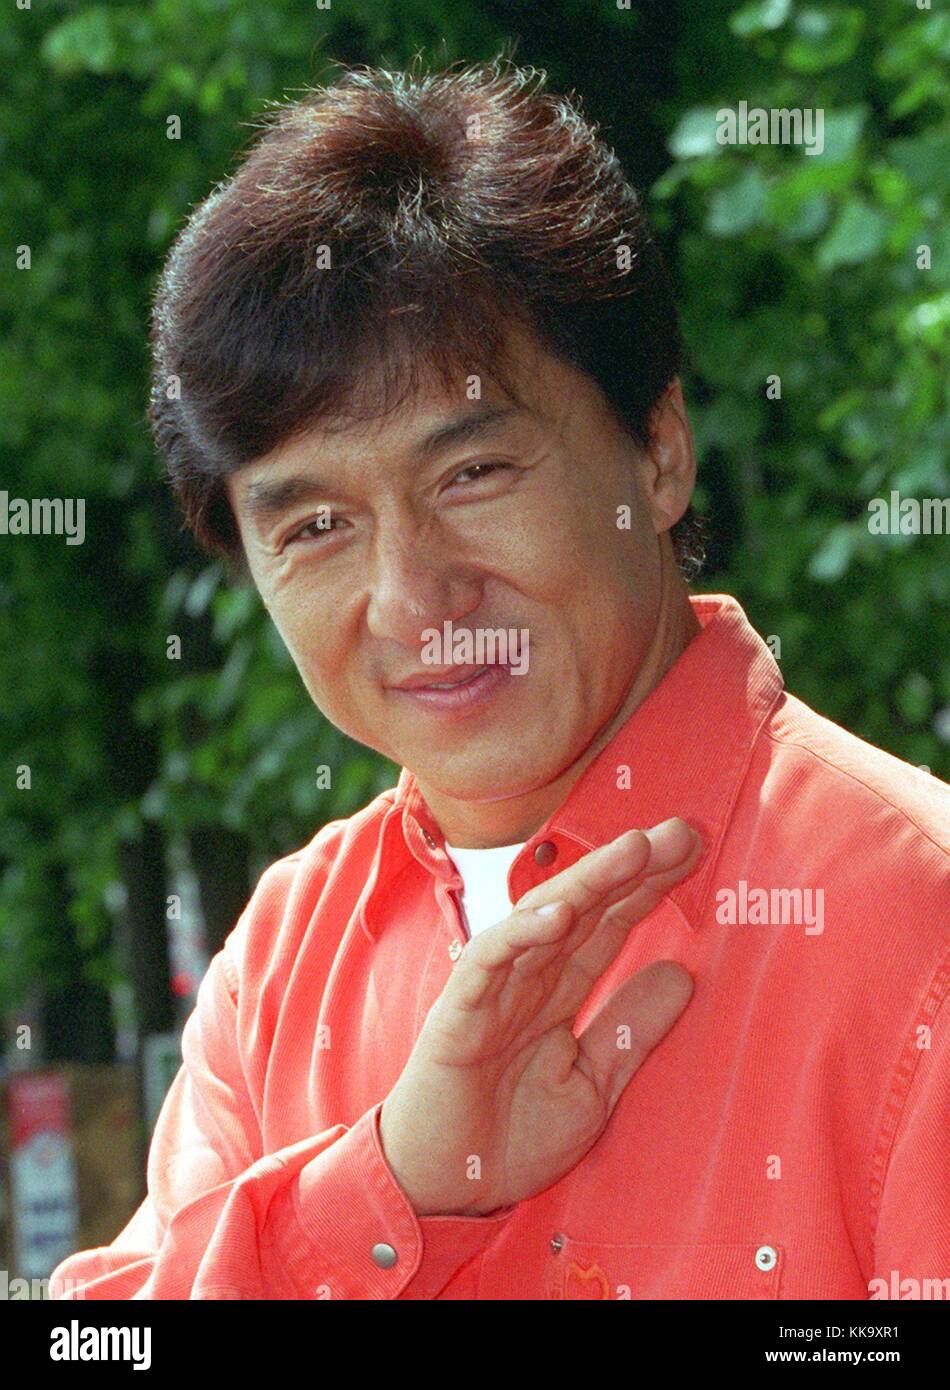 Jackie Chan fördert zum ersten Mal seinen neuen Film "strike" in Hamburg (Deutschland) am 14. Juli 1997. | Verwendung weltweit Stockfoto